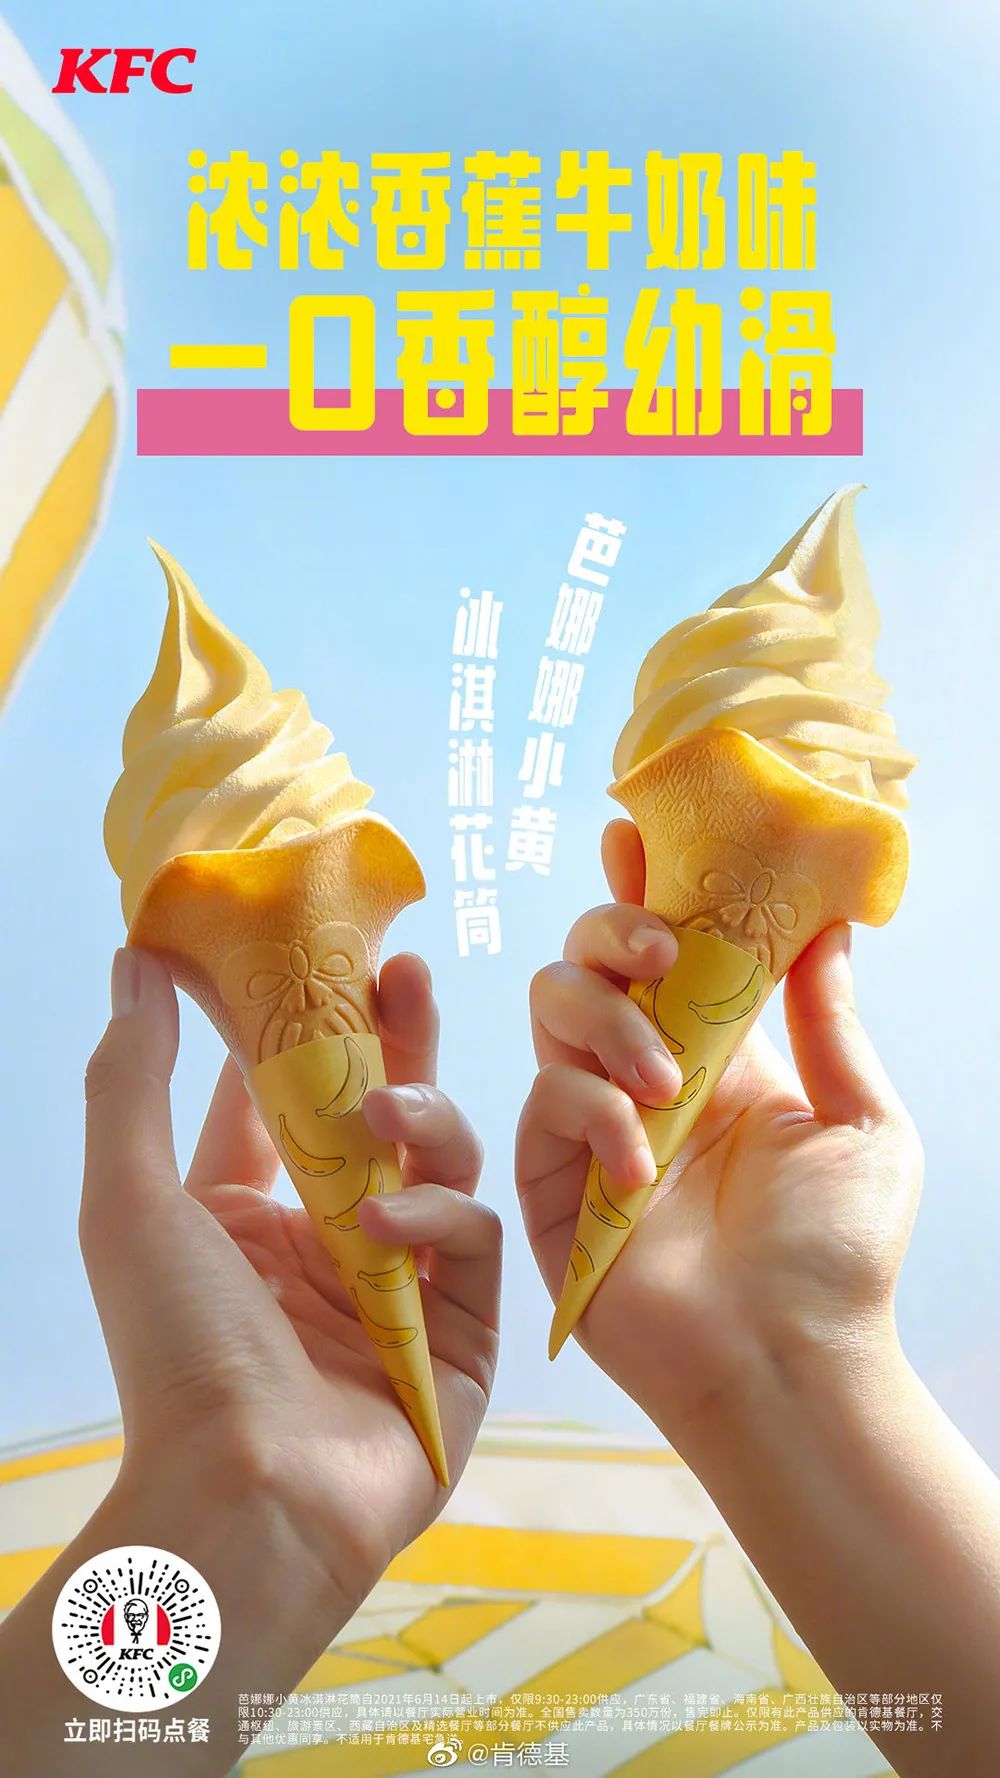 摩天冰淇淋海报图片